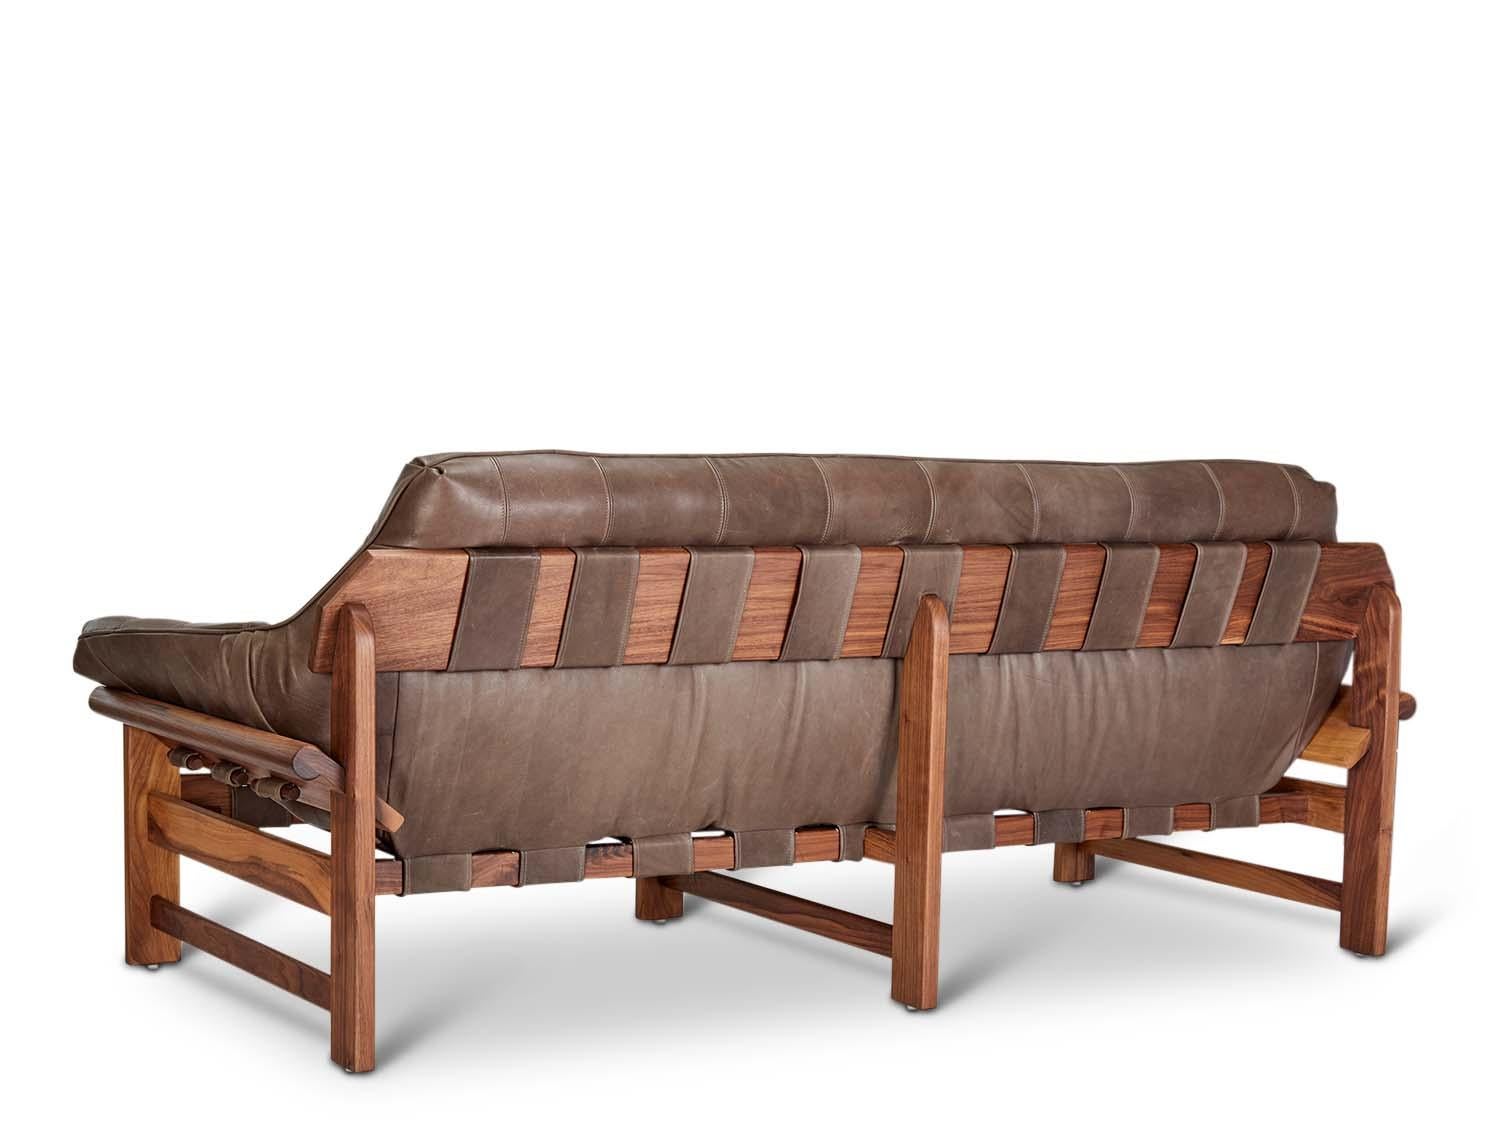 American Tan Leather and Walnut Ojai Sofa by Lawson-Fenning